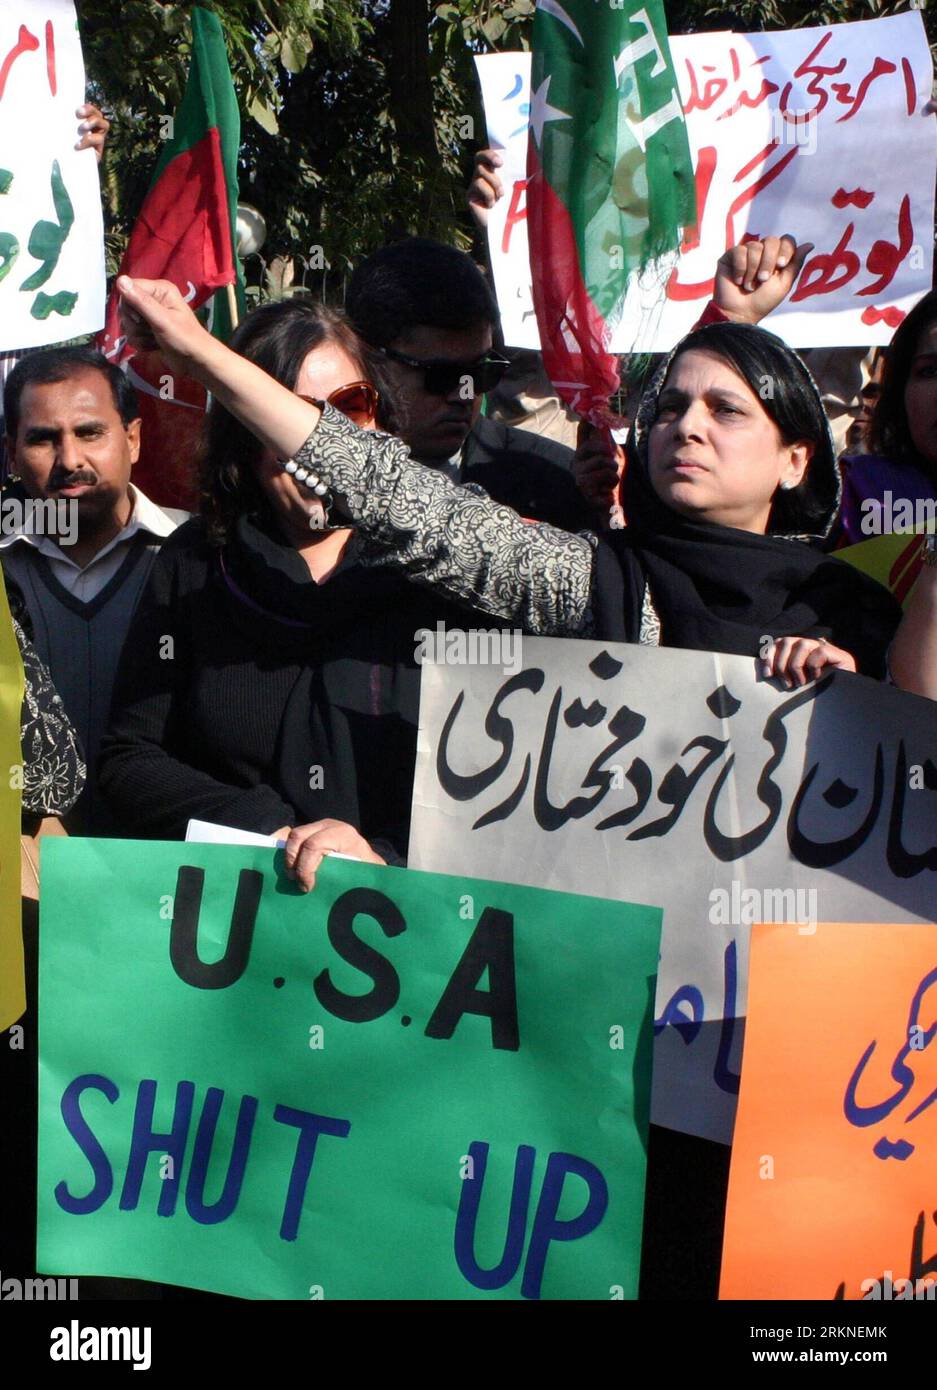 Bildnummer : 57105935 Datum : 25.02.2012 Copyright : imago/Xinhua (120224) -- LAHORE, 24 février 2012 (Xinhua) -- les Pakistanais portent des pancartes lorsqu'ils crient des slogans anti-américains lors d'une manifestation dans l'est du Pakistan, Lahore, le 24 février 2012. Le Premier ministre pakistanais YousufxRazaxGilani a condamné la semaine dernière une résolution présentée par un législateur américain appelant à l'autodétermination dans la province agitée du Baloutchistan. (Xinhua/Sajjad) PAKISTAN-LAHORE-PROTEST-US PUBLICATIONxNOTxINxCHN Gesellschaft Politik Protest Demo x1x xst premiumd 2012 hoch 57105935 Date 25 02 2012 Copyright Imago XINHUA Lahore février 24 2012 Banque D'Images